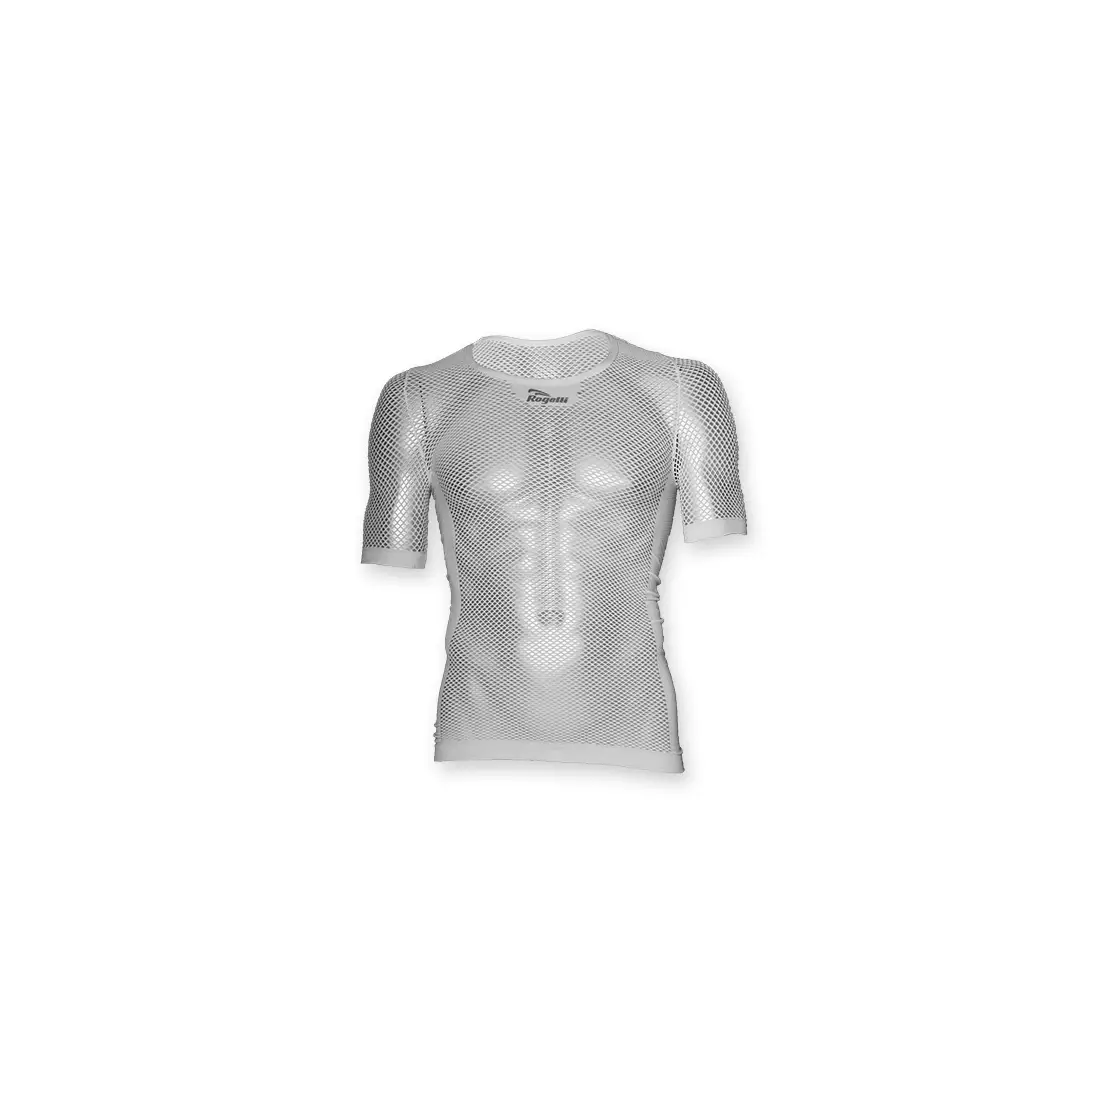 ROGELLI AIR - lenjerie termica - tricou cu maneca scurta - culoare: Alb